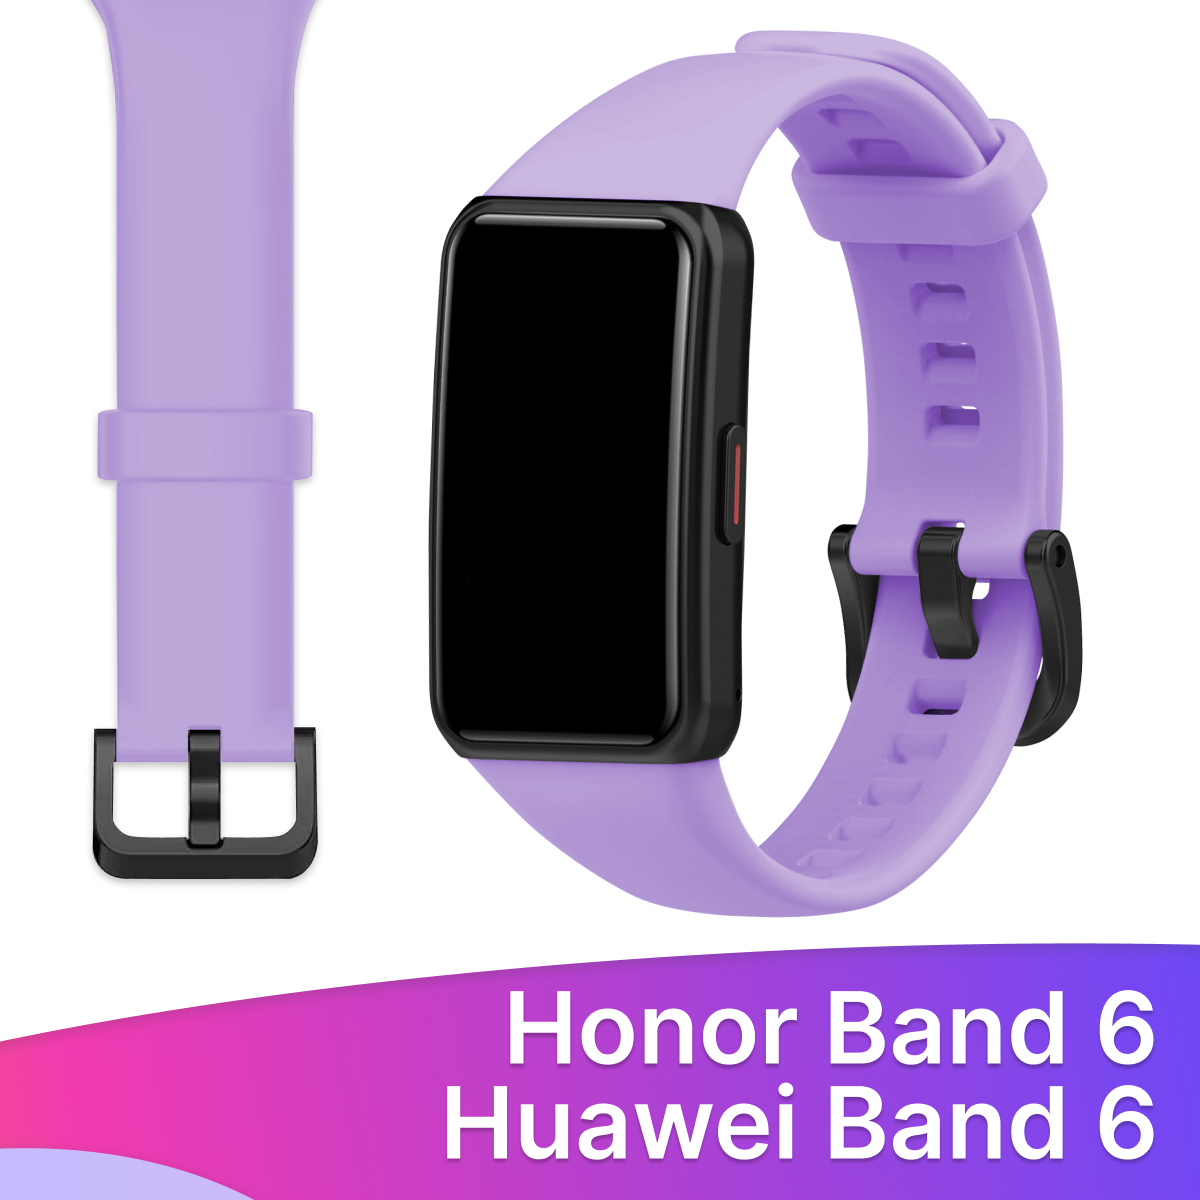 Силиконовый ремешок для Honor Band 6 и Huawei Band 6 / Сменный браслет для умных смарт часов / Фитнес трекера Хонор и Хуавей Бэнд 6, Сиреневый